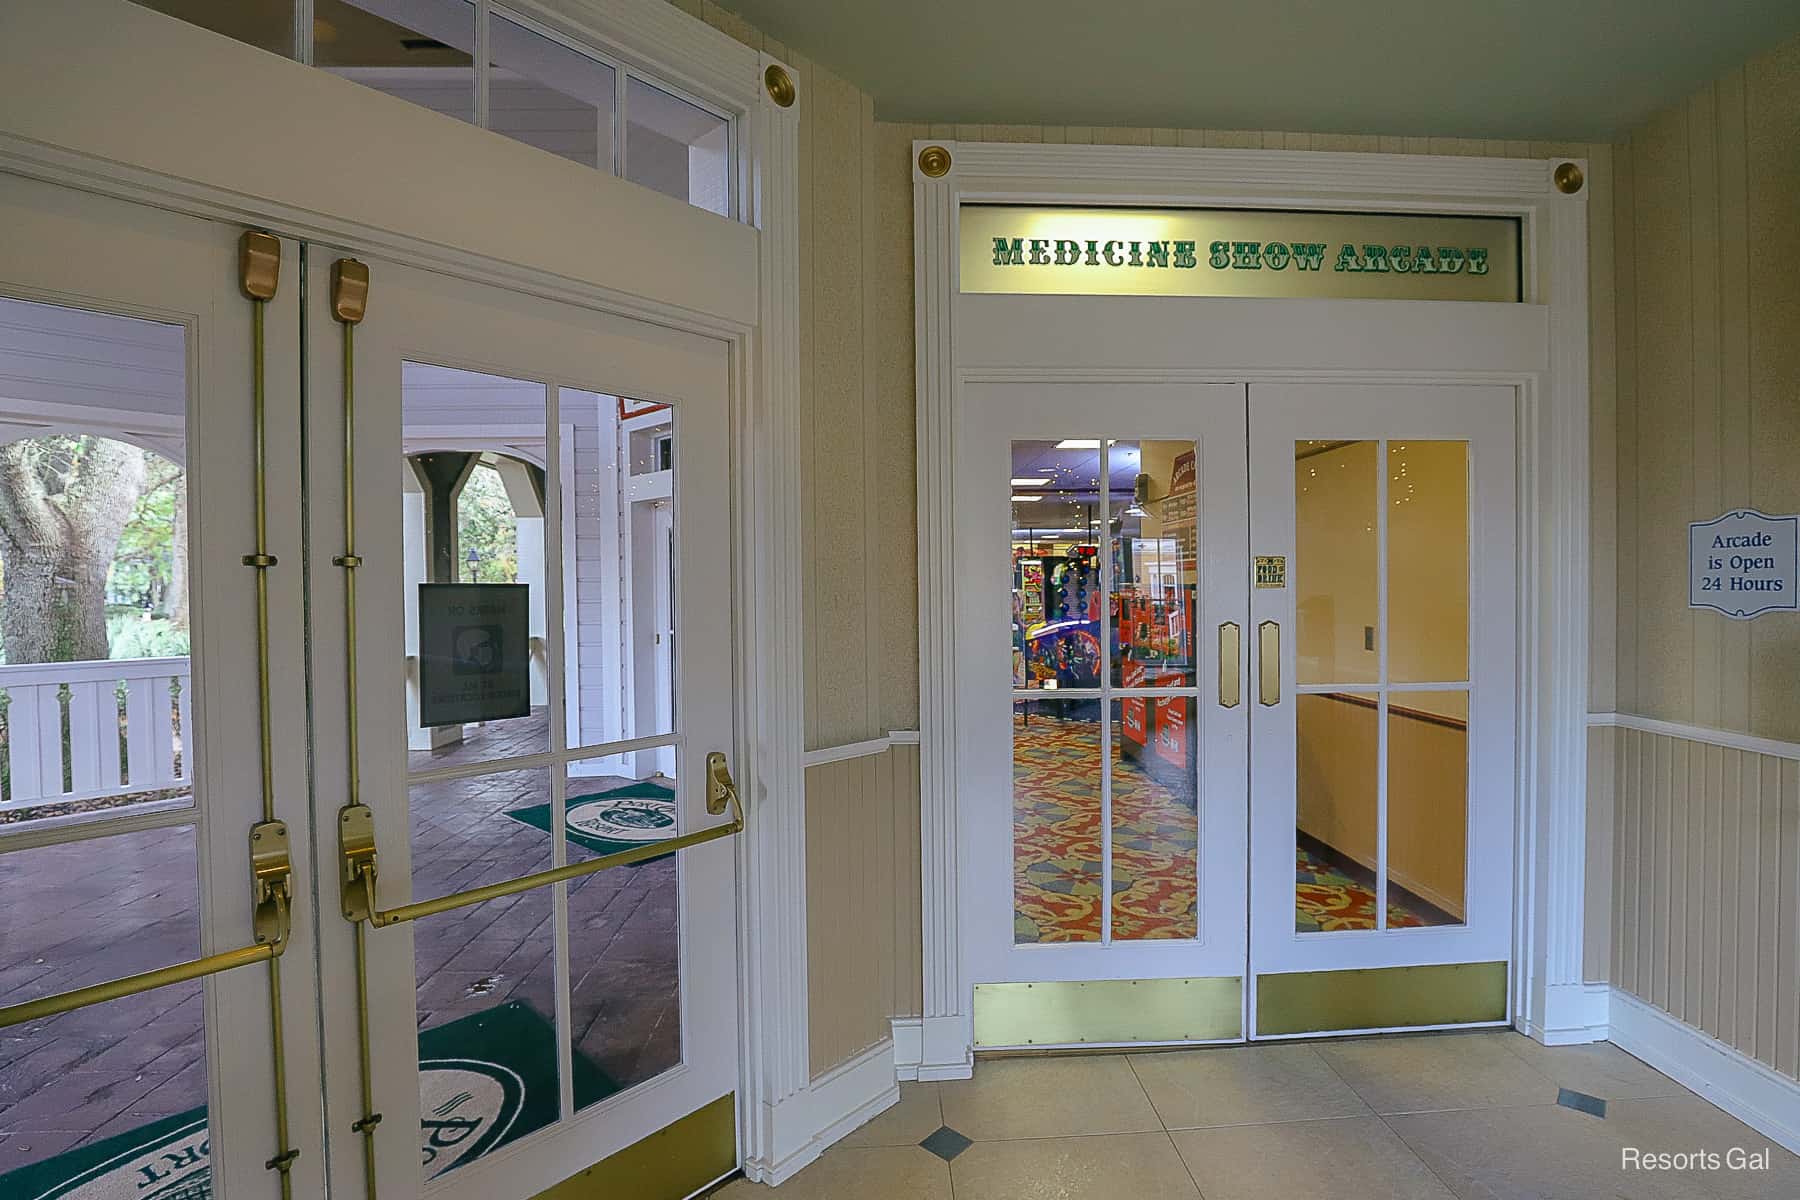 the entrance to Medicine Show Arcade 